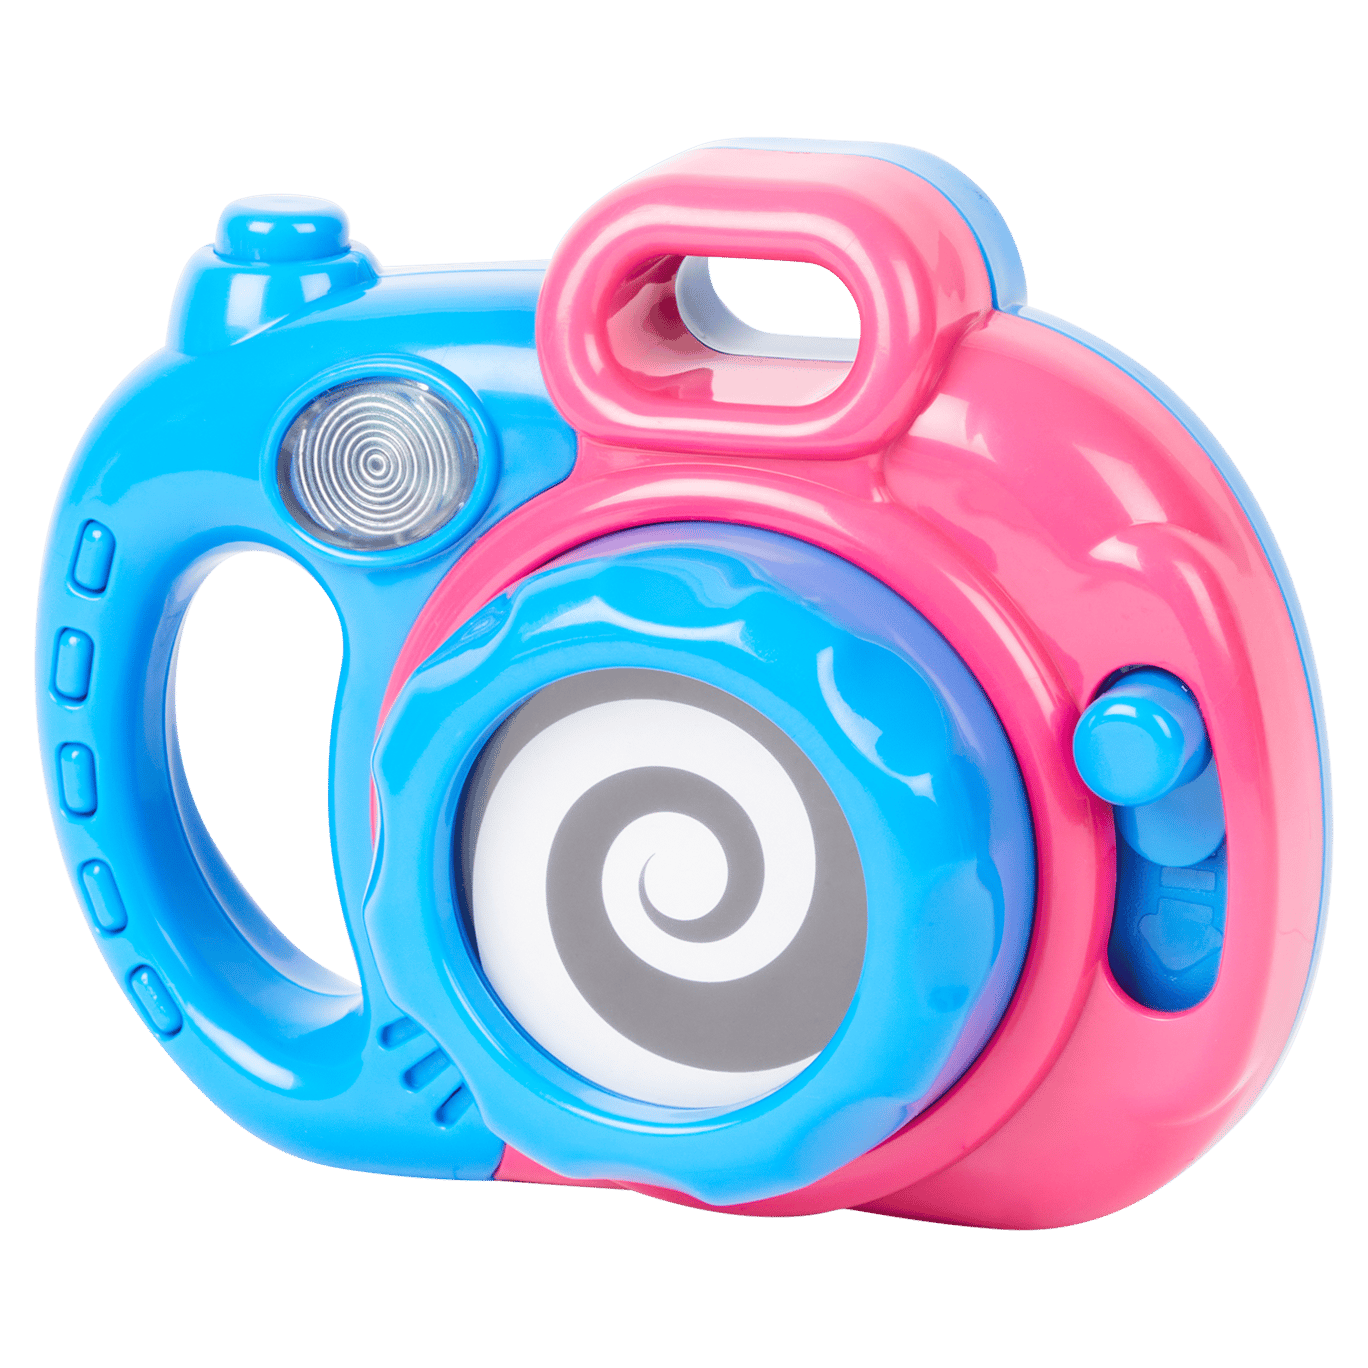 Zabawkowy aparat fotograficzny Playgo